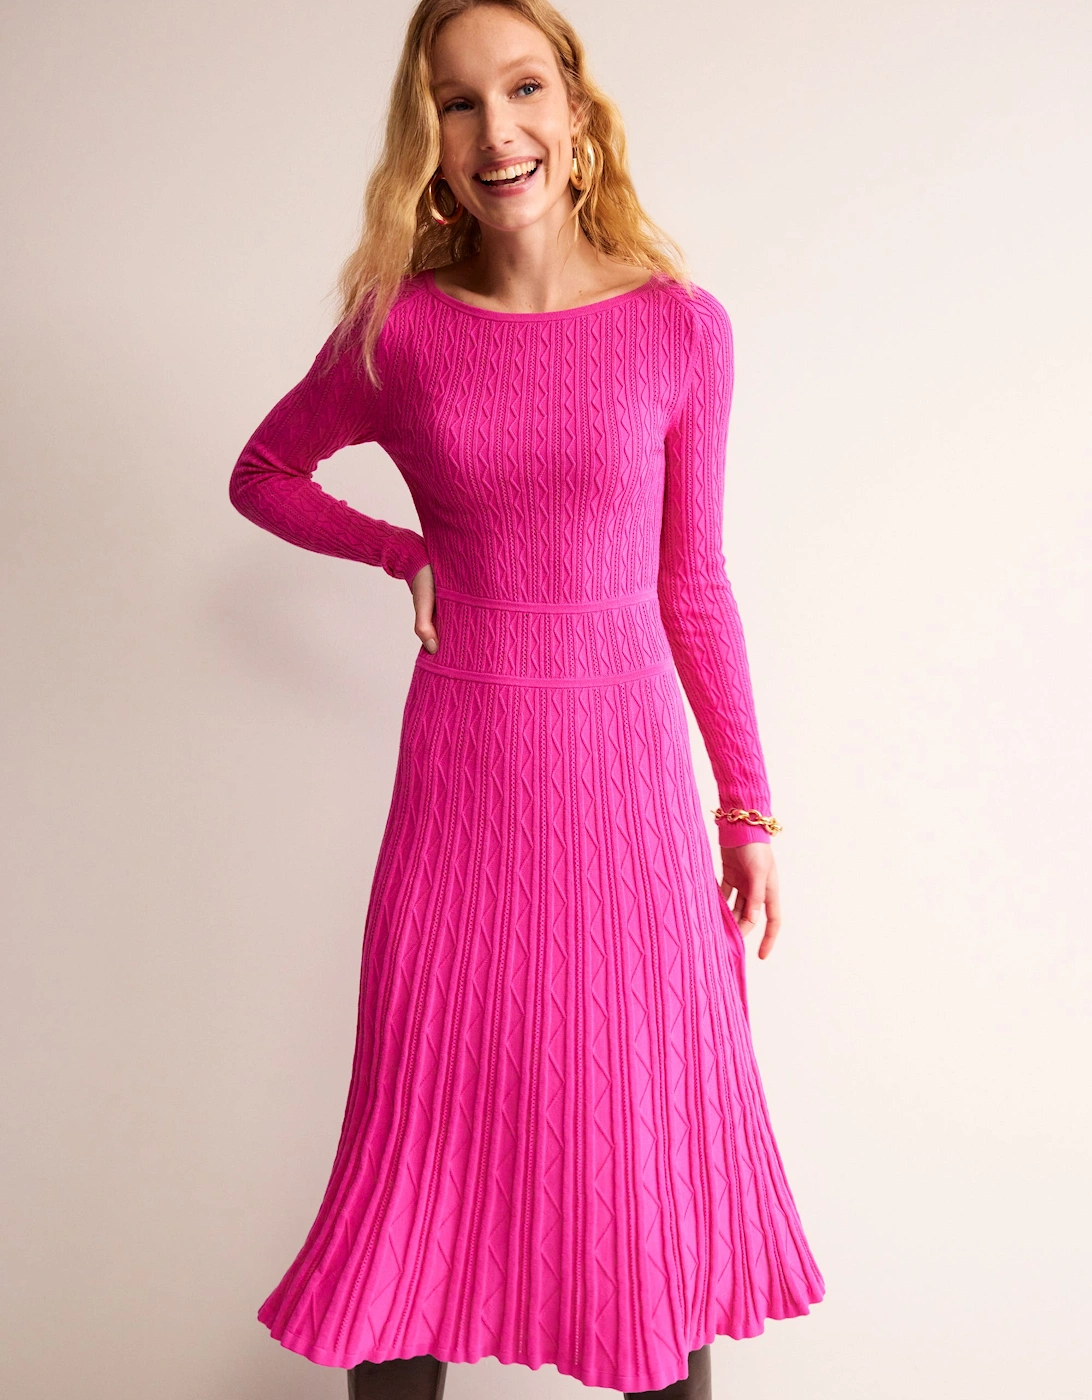 Imogen Empire Knitted Dress